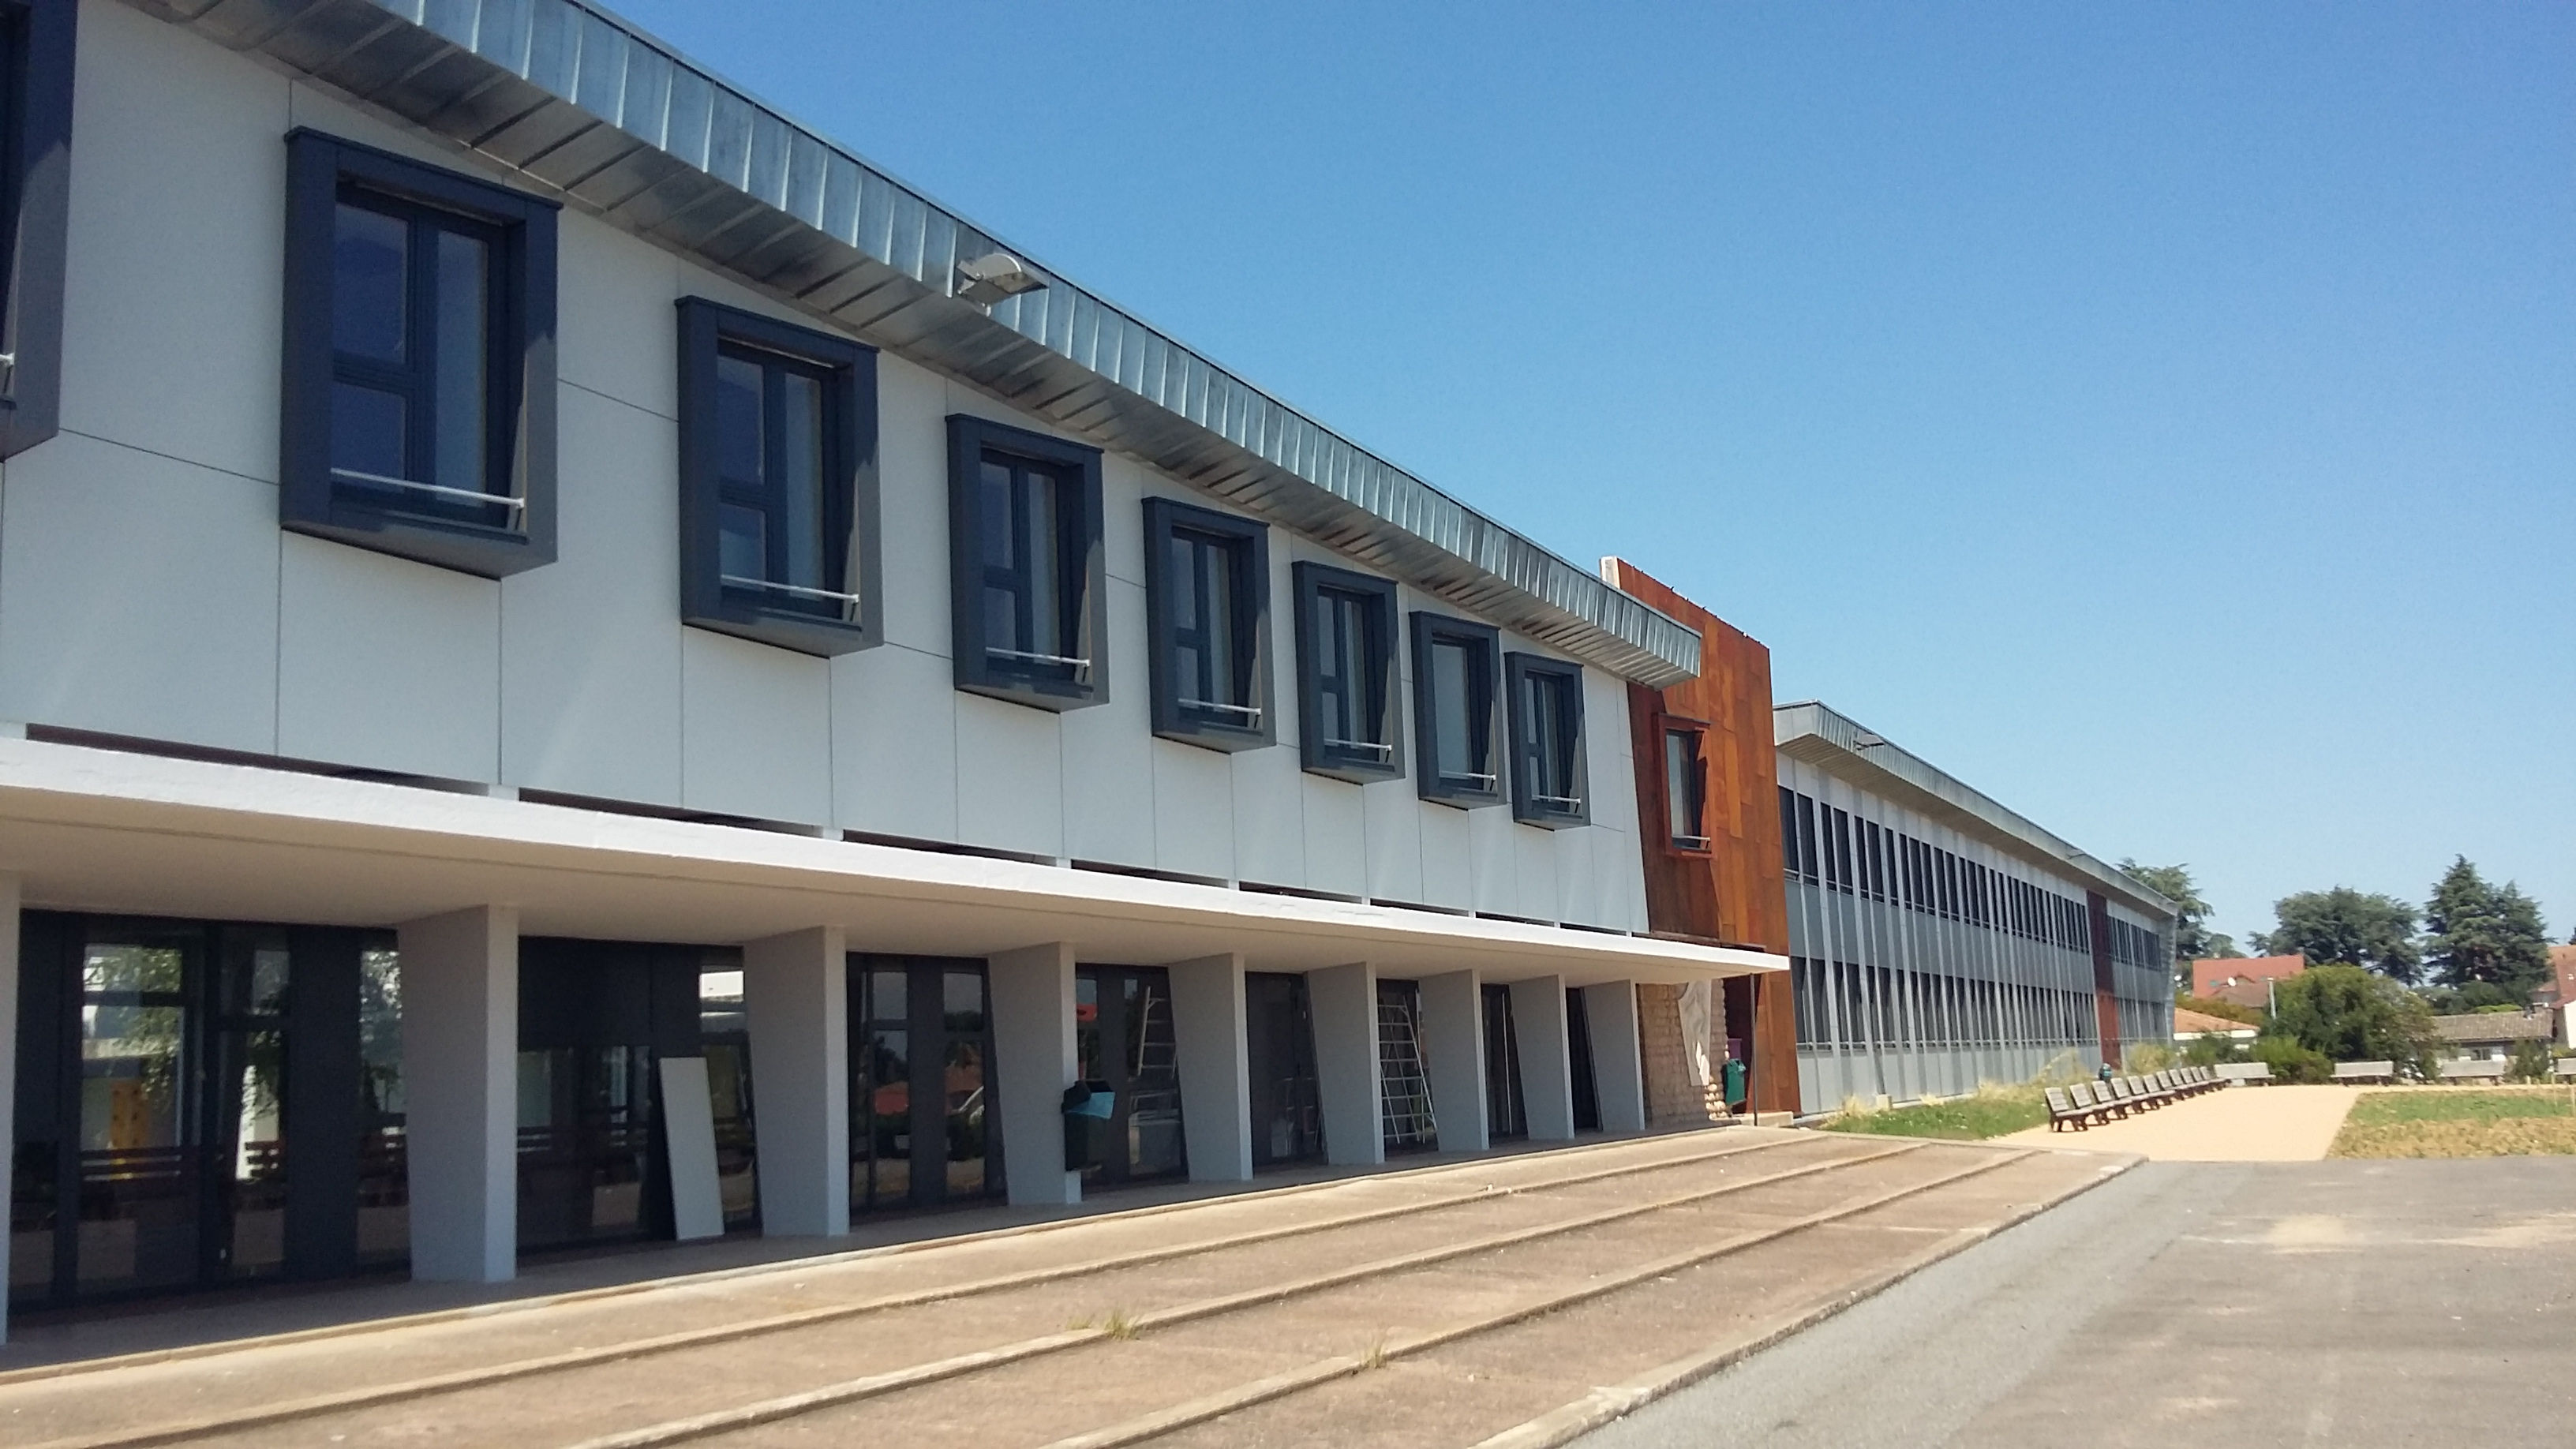 Macon :  Réhabilitation thermique et architecturale Lycée René Cassin 1300 élèves